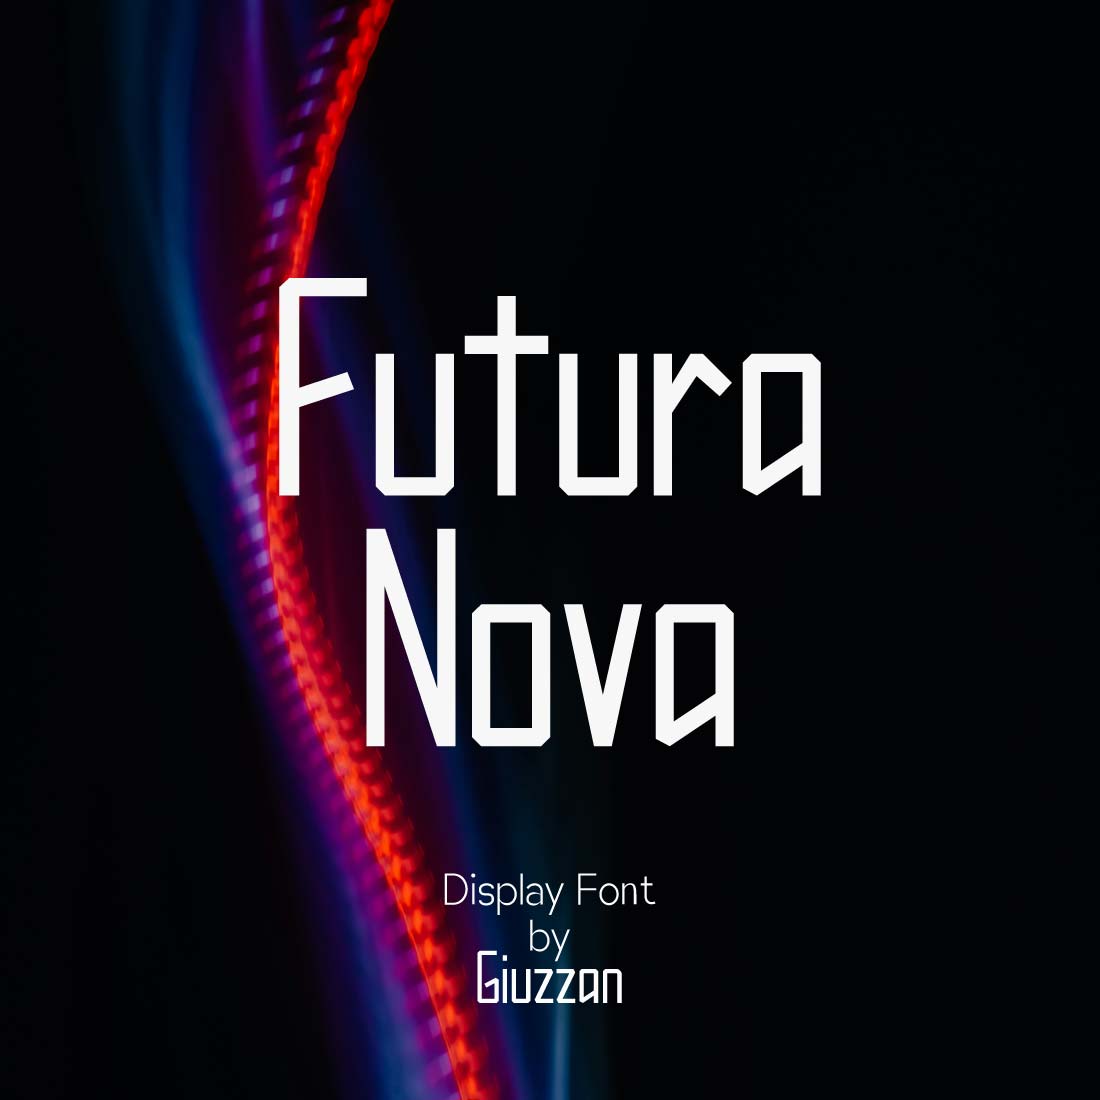 Funtura Nova | Display Font cover image.